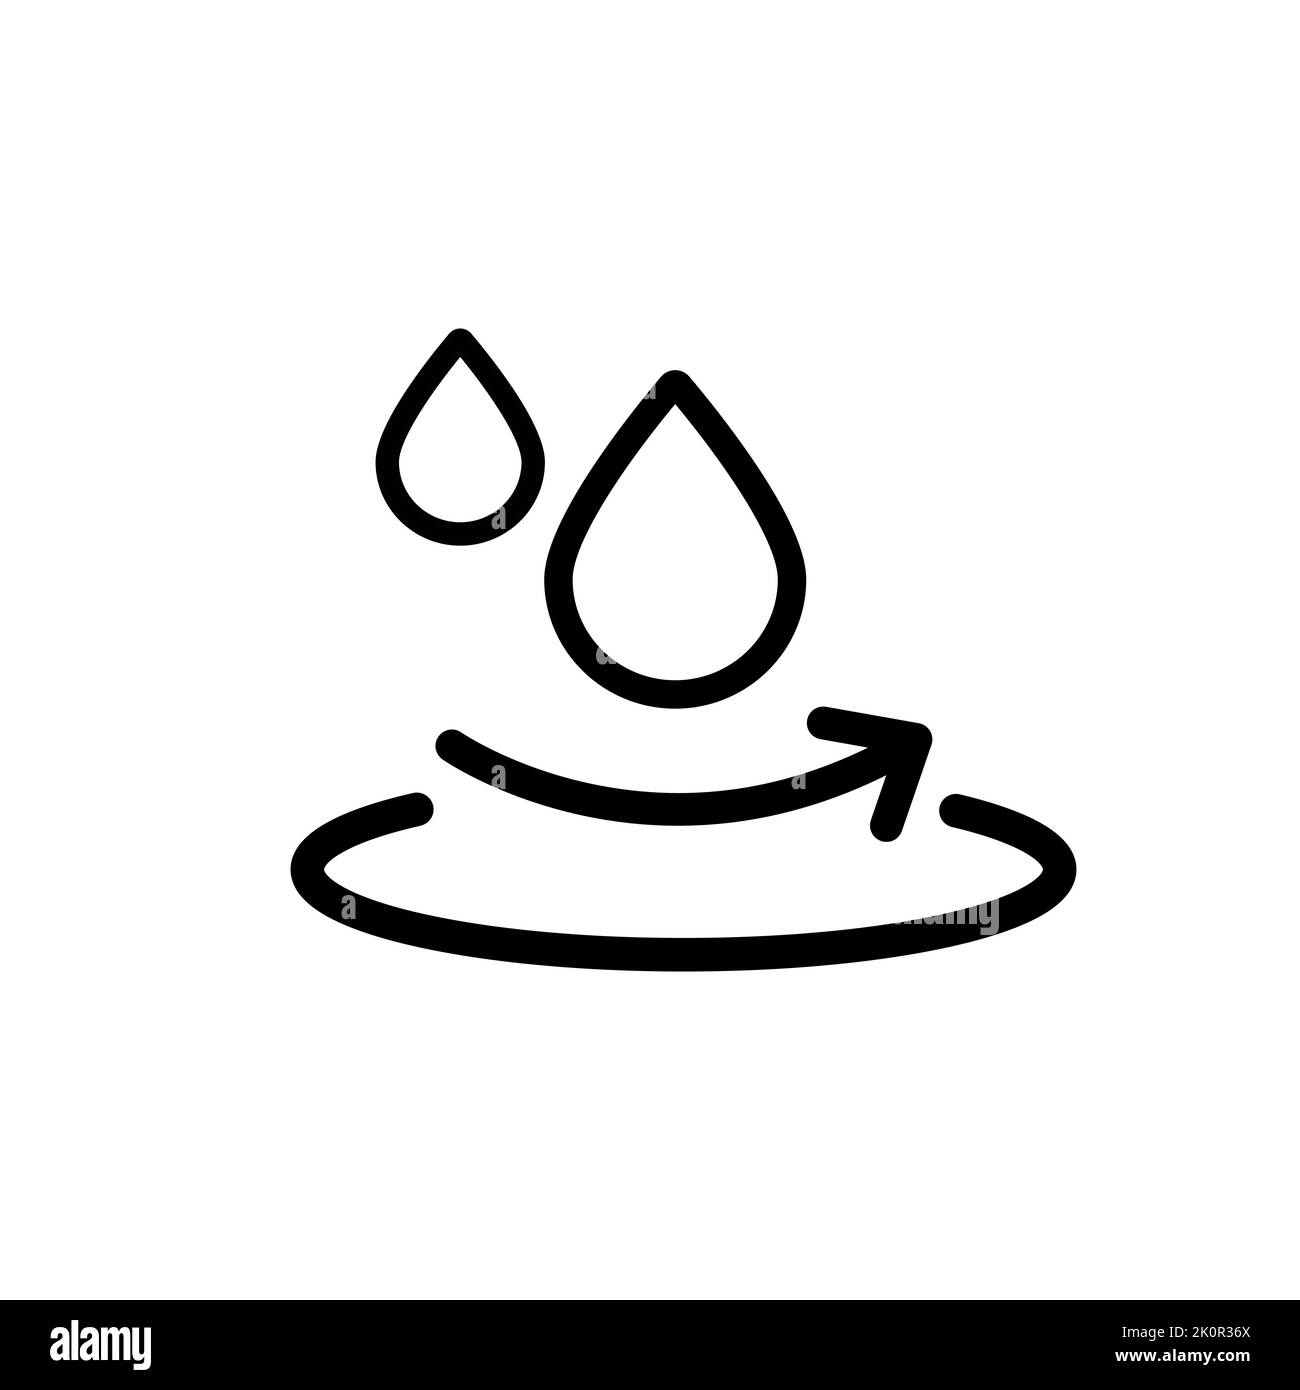 Icona con linea superficiale idrorepellente, simbolo impermeabile isolato su sfondo bianco, illustrazione vettoriale. Illustrazione Vettoriale